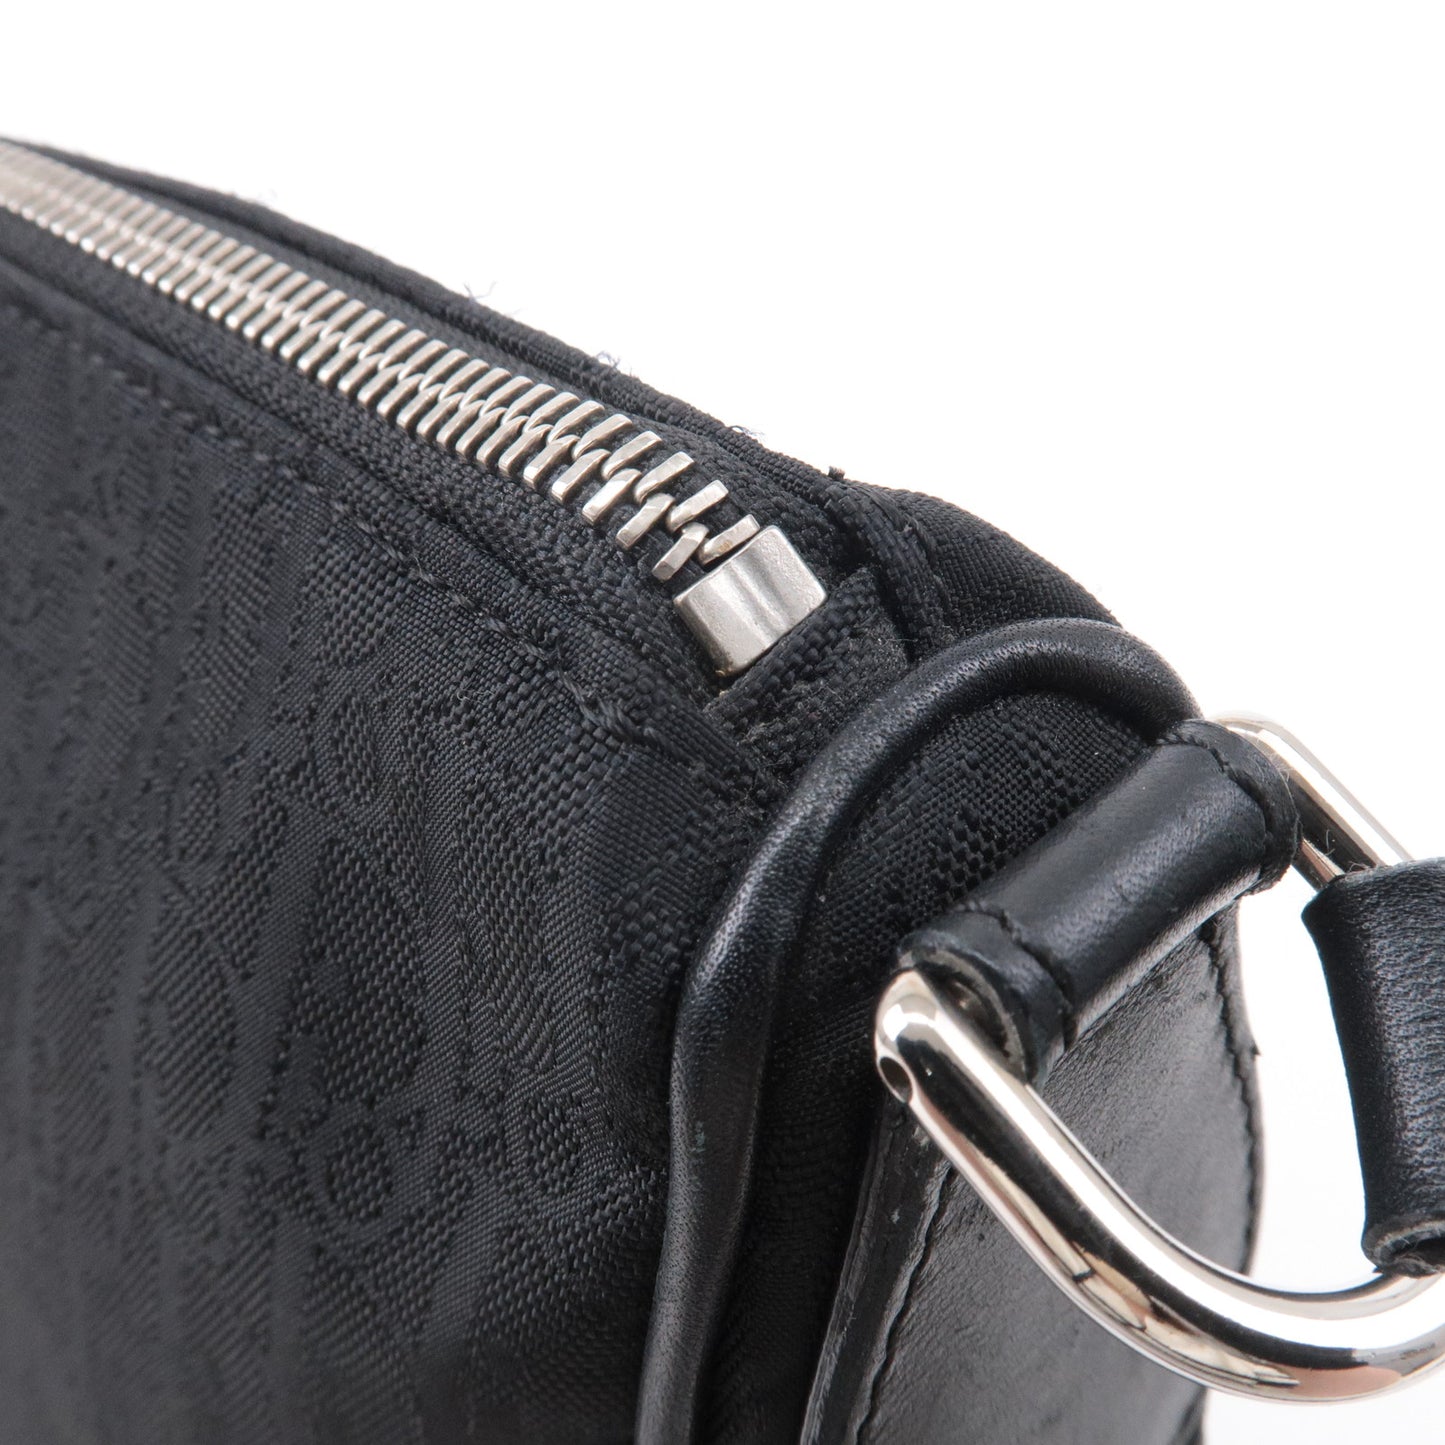 Christian Dior Lovely Canvas Leather Shoulder Bag Black